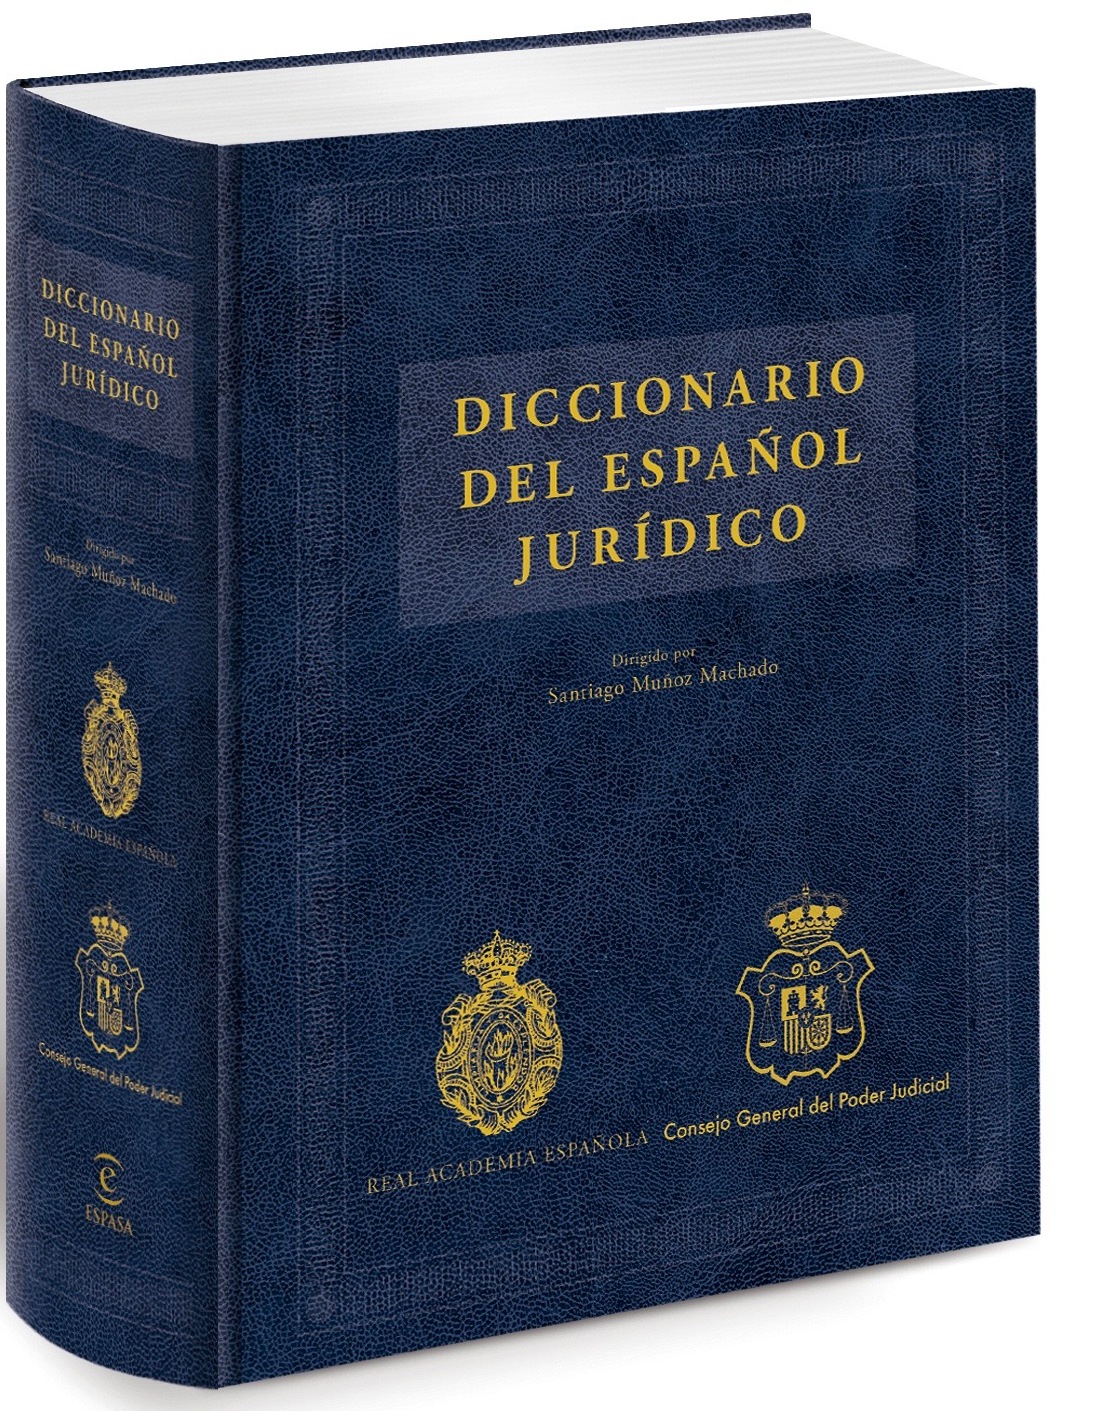 diccionario real academia espanola sinonimos online